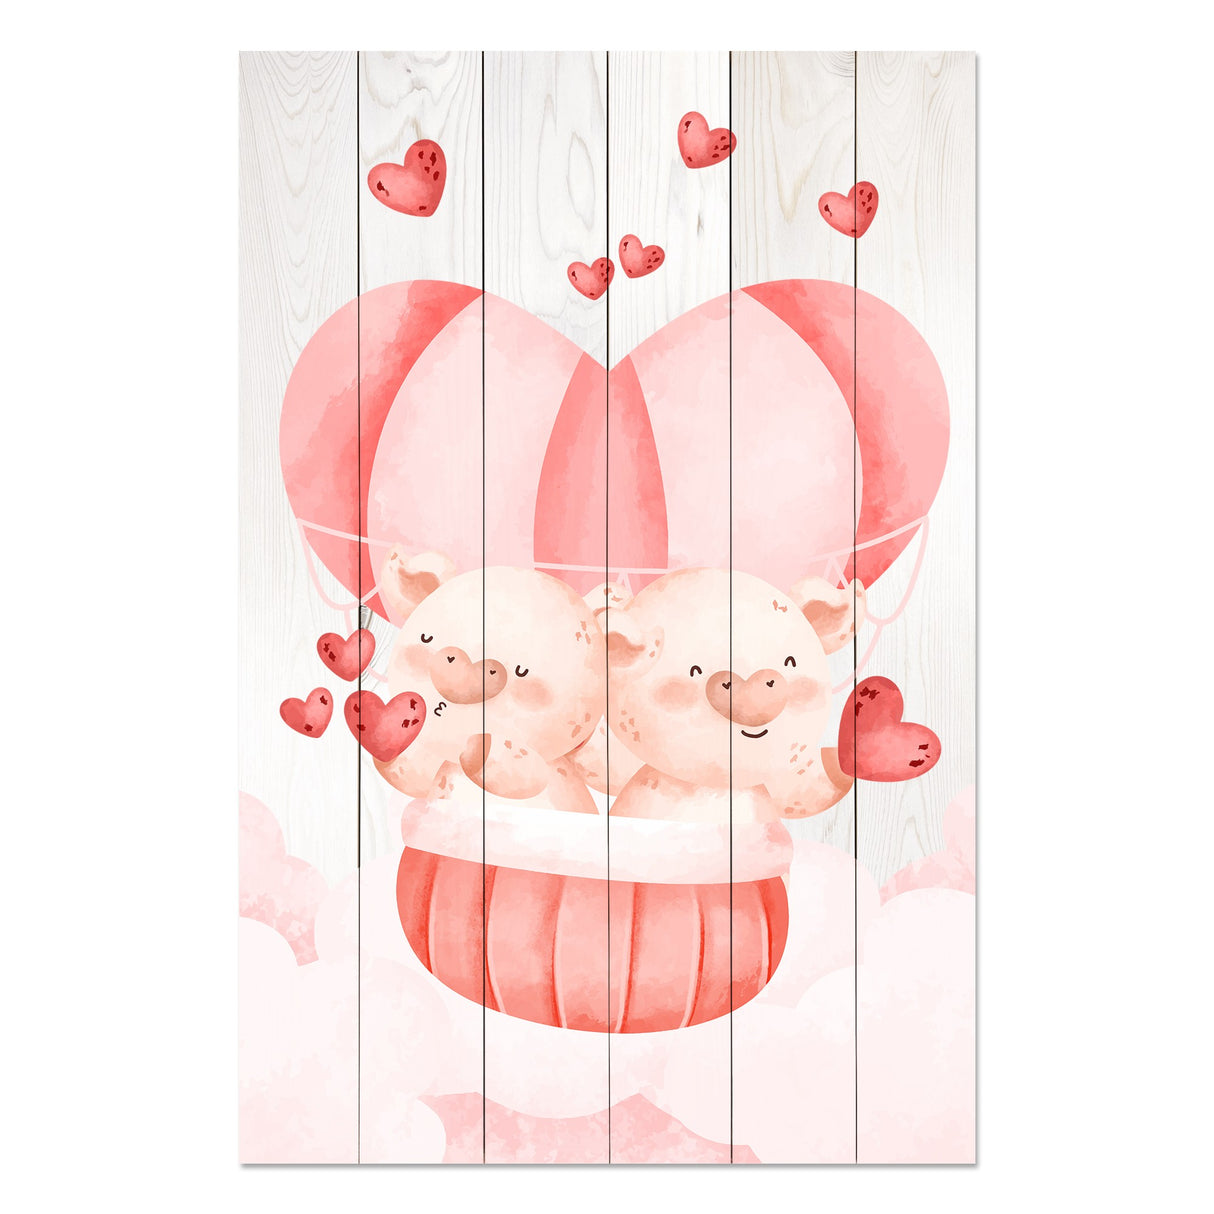 Obraz na drewnie Para świnek - Pig Couple with Hearts